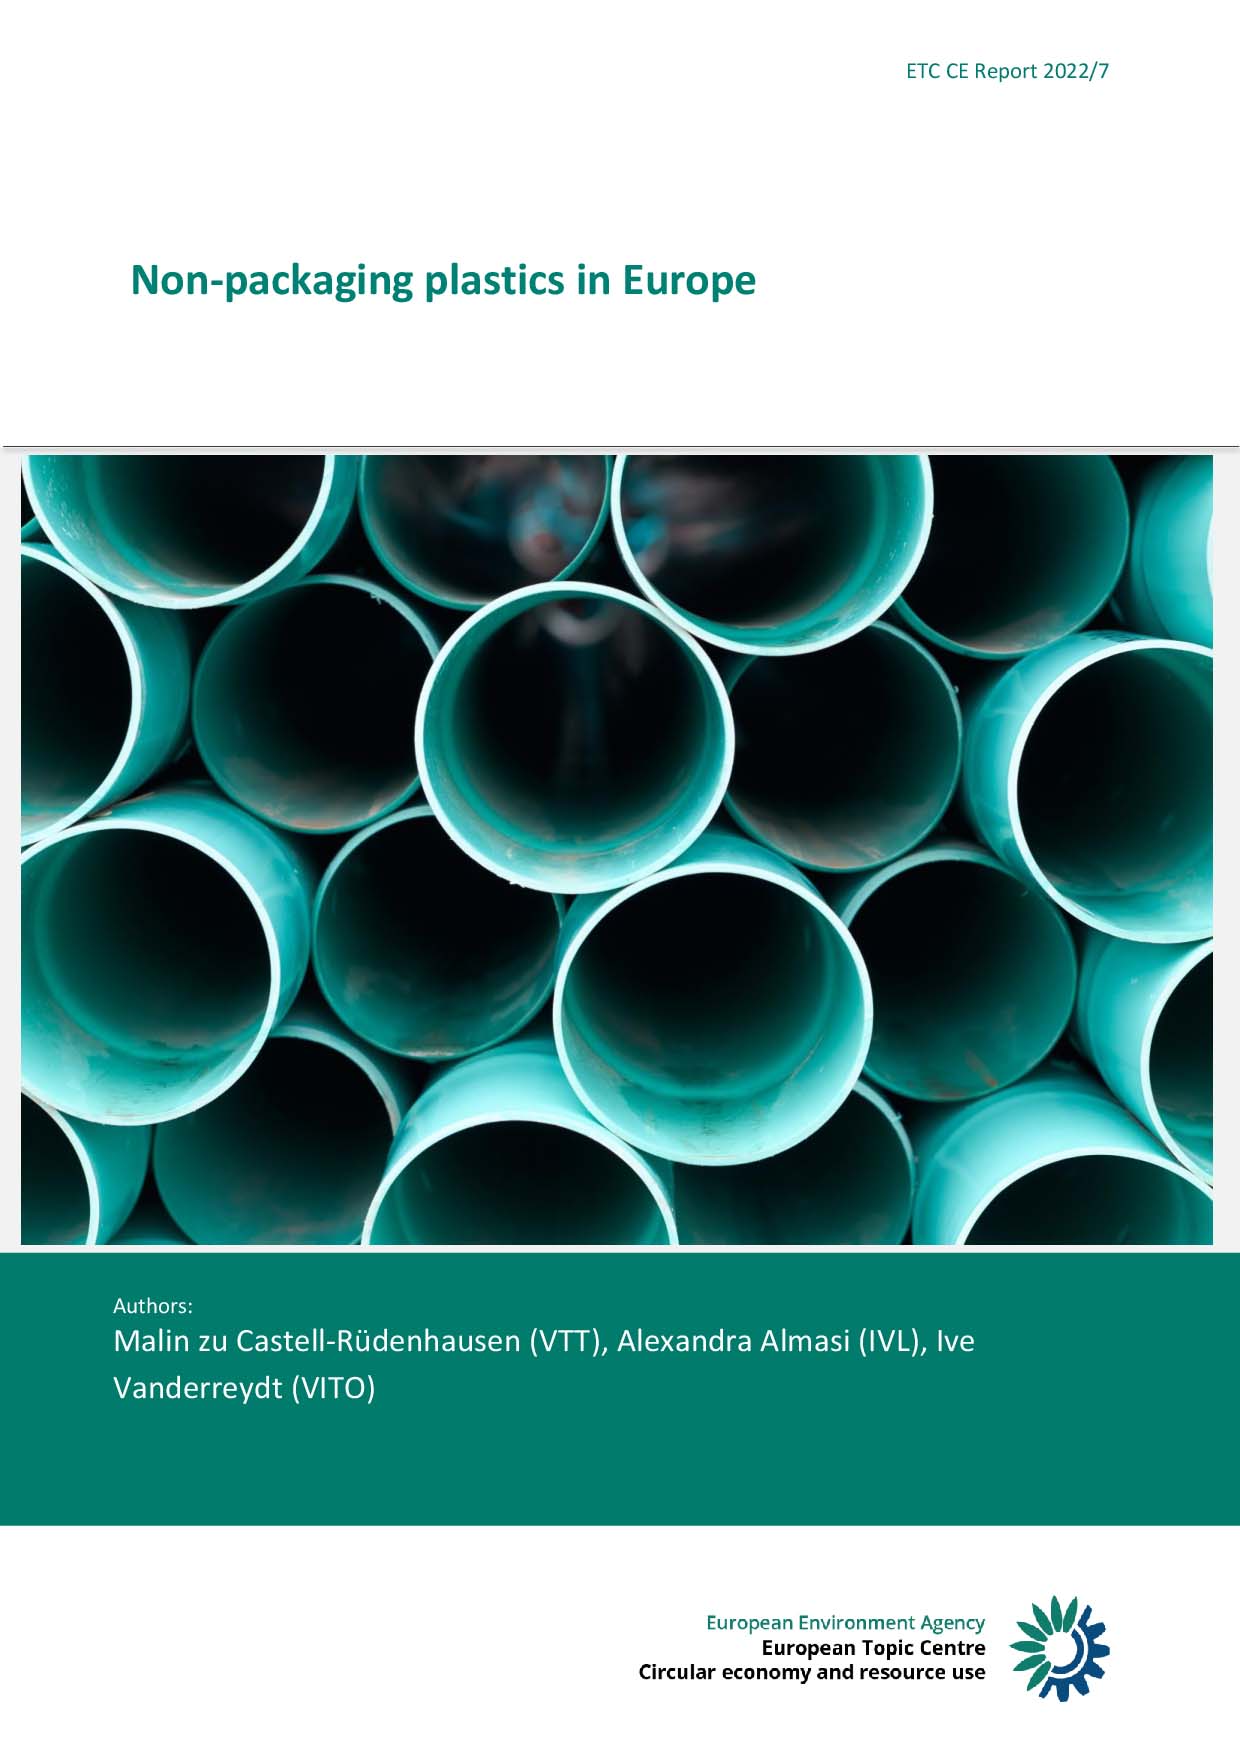 Δημοσιεύτηκε έκθεση για τα Πλαστικά μη-συσκευασίας στην Ευρώπη, από το ETC/CE